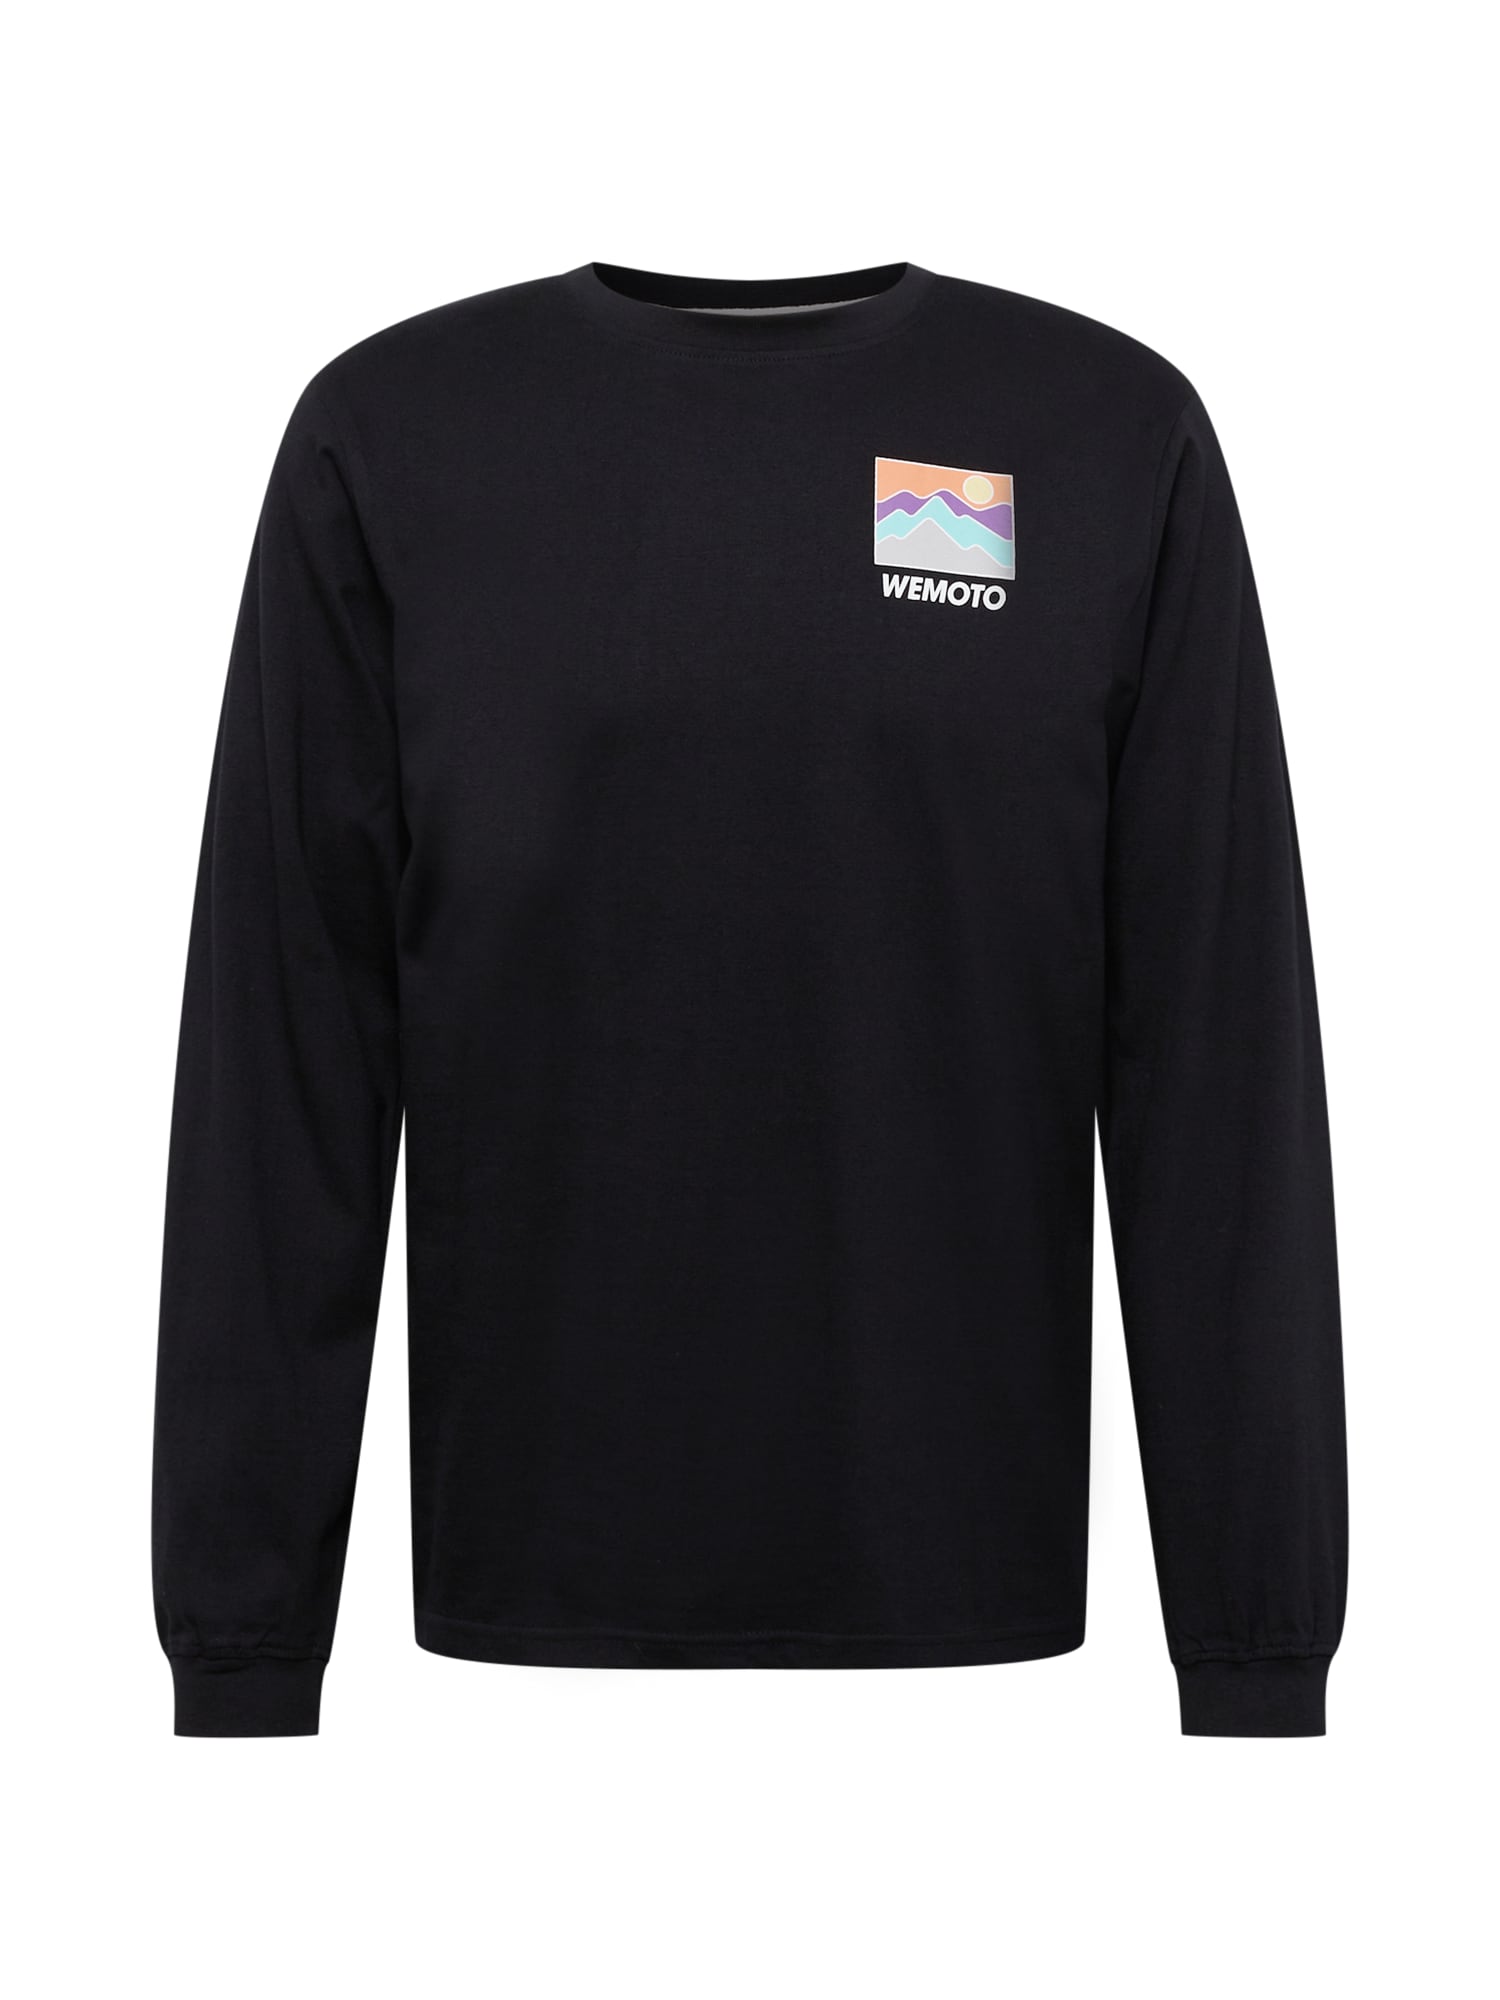 Wemoto Marškinėliai 'Mountain LS' mišrios spalvos / juoda